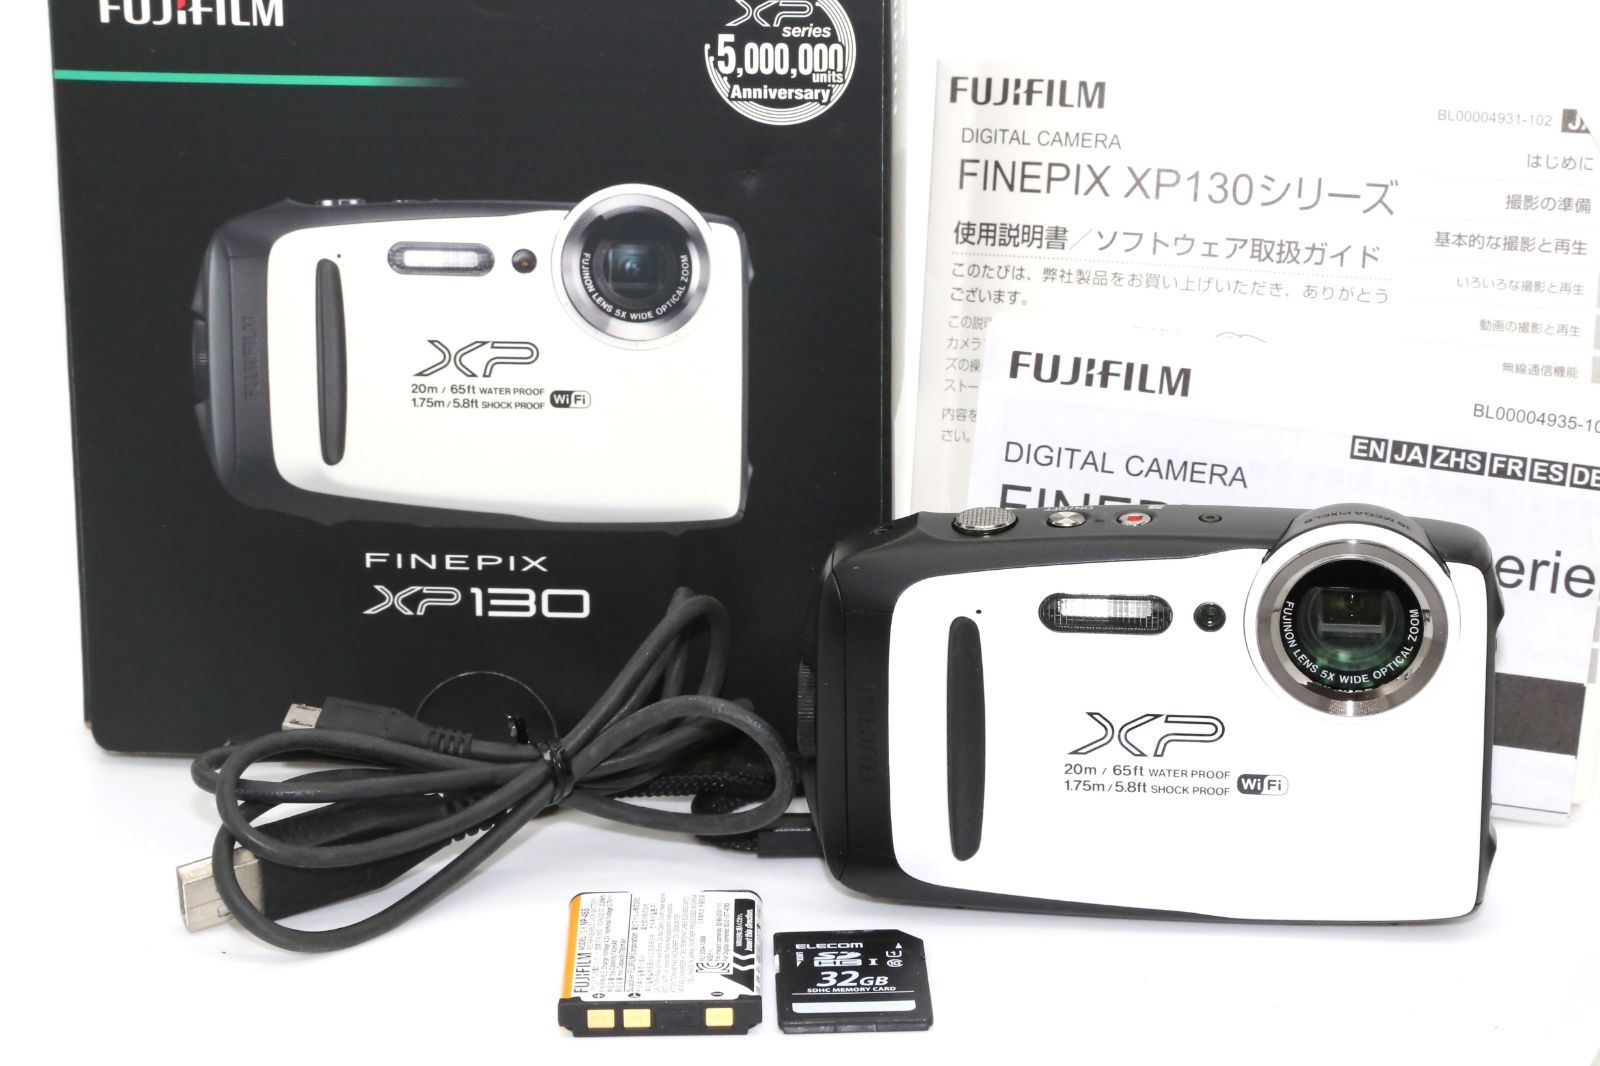 美品 FUJIFILM 防水カメラ XP130 ホワイト FX-XP130WH